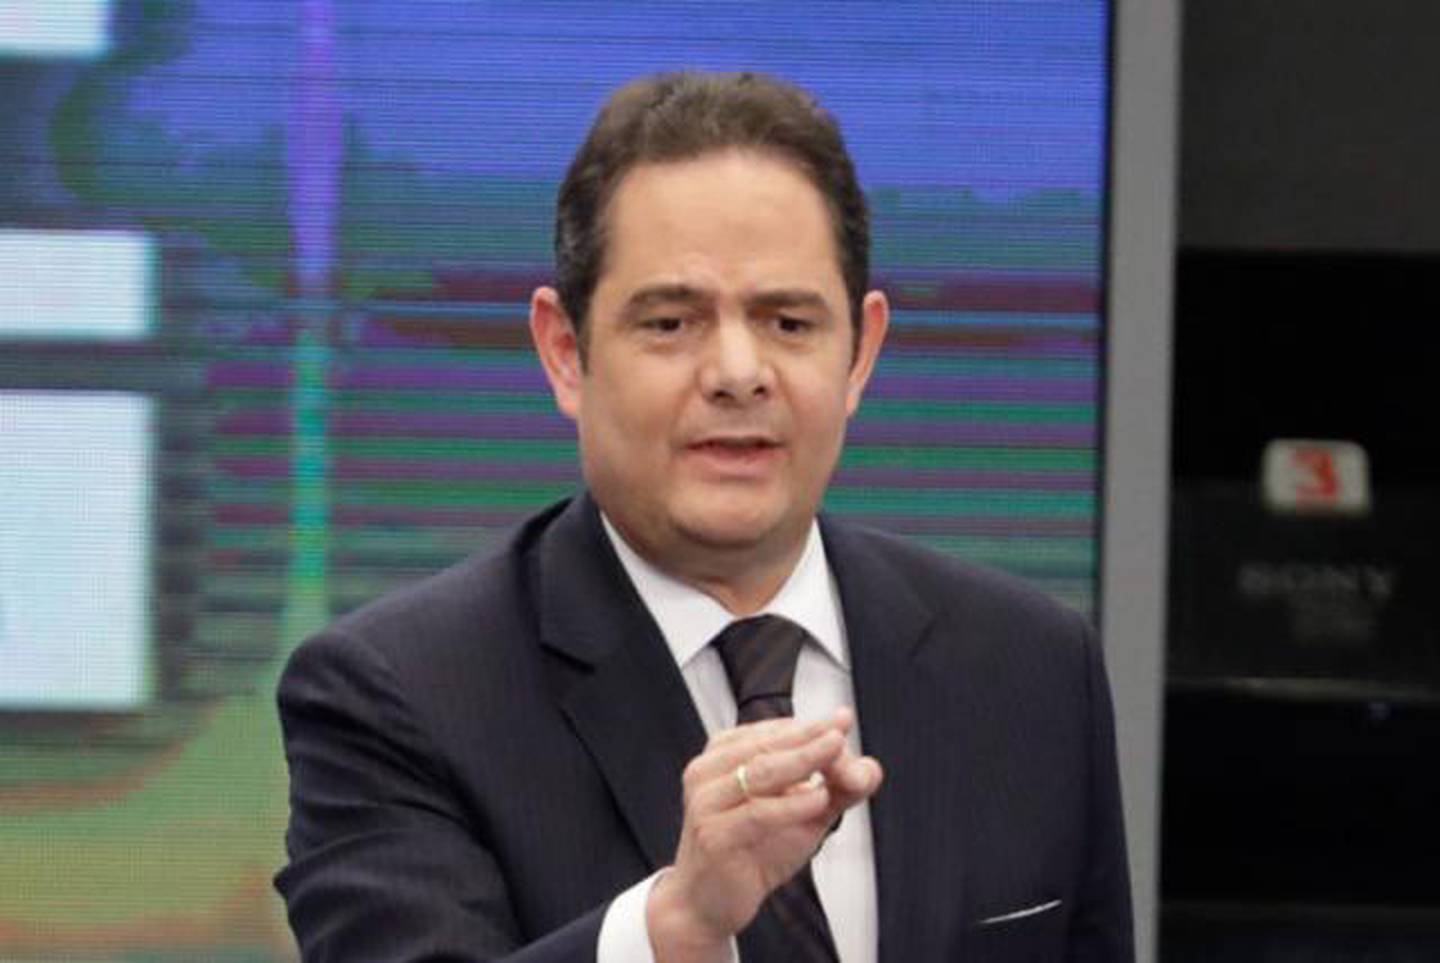 Germán Vargas Lleras, político colombiano